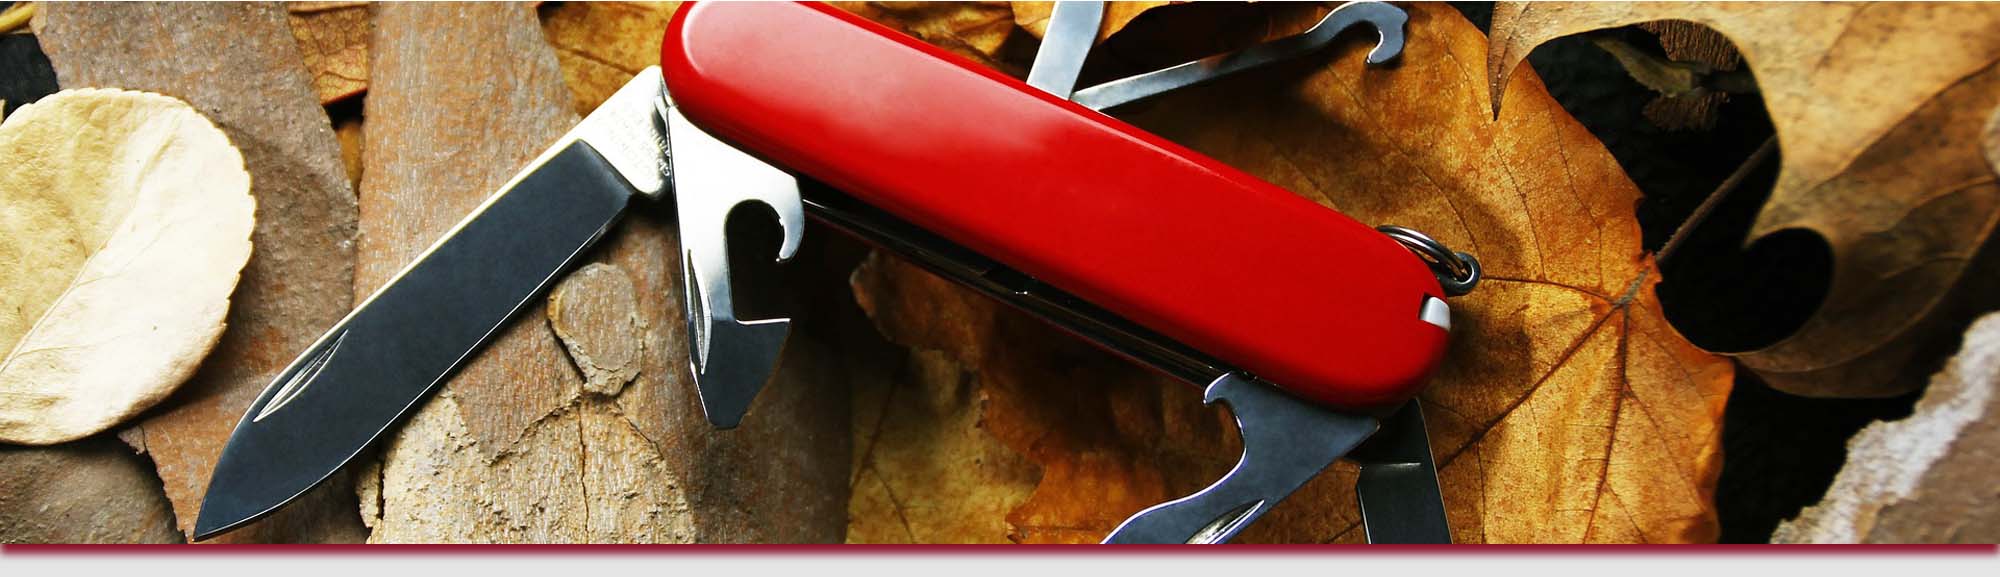 Cuchillería Colmenero - Tienda de cuchillos, navajas, tijeras - Afilar y reparar herramientas cortantes en Donosti (Gipuzkoa)